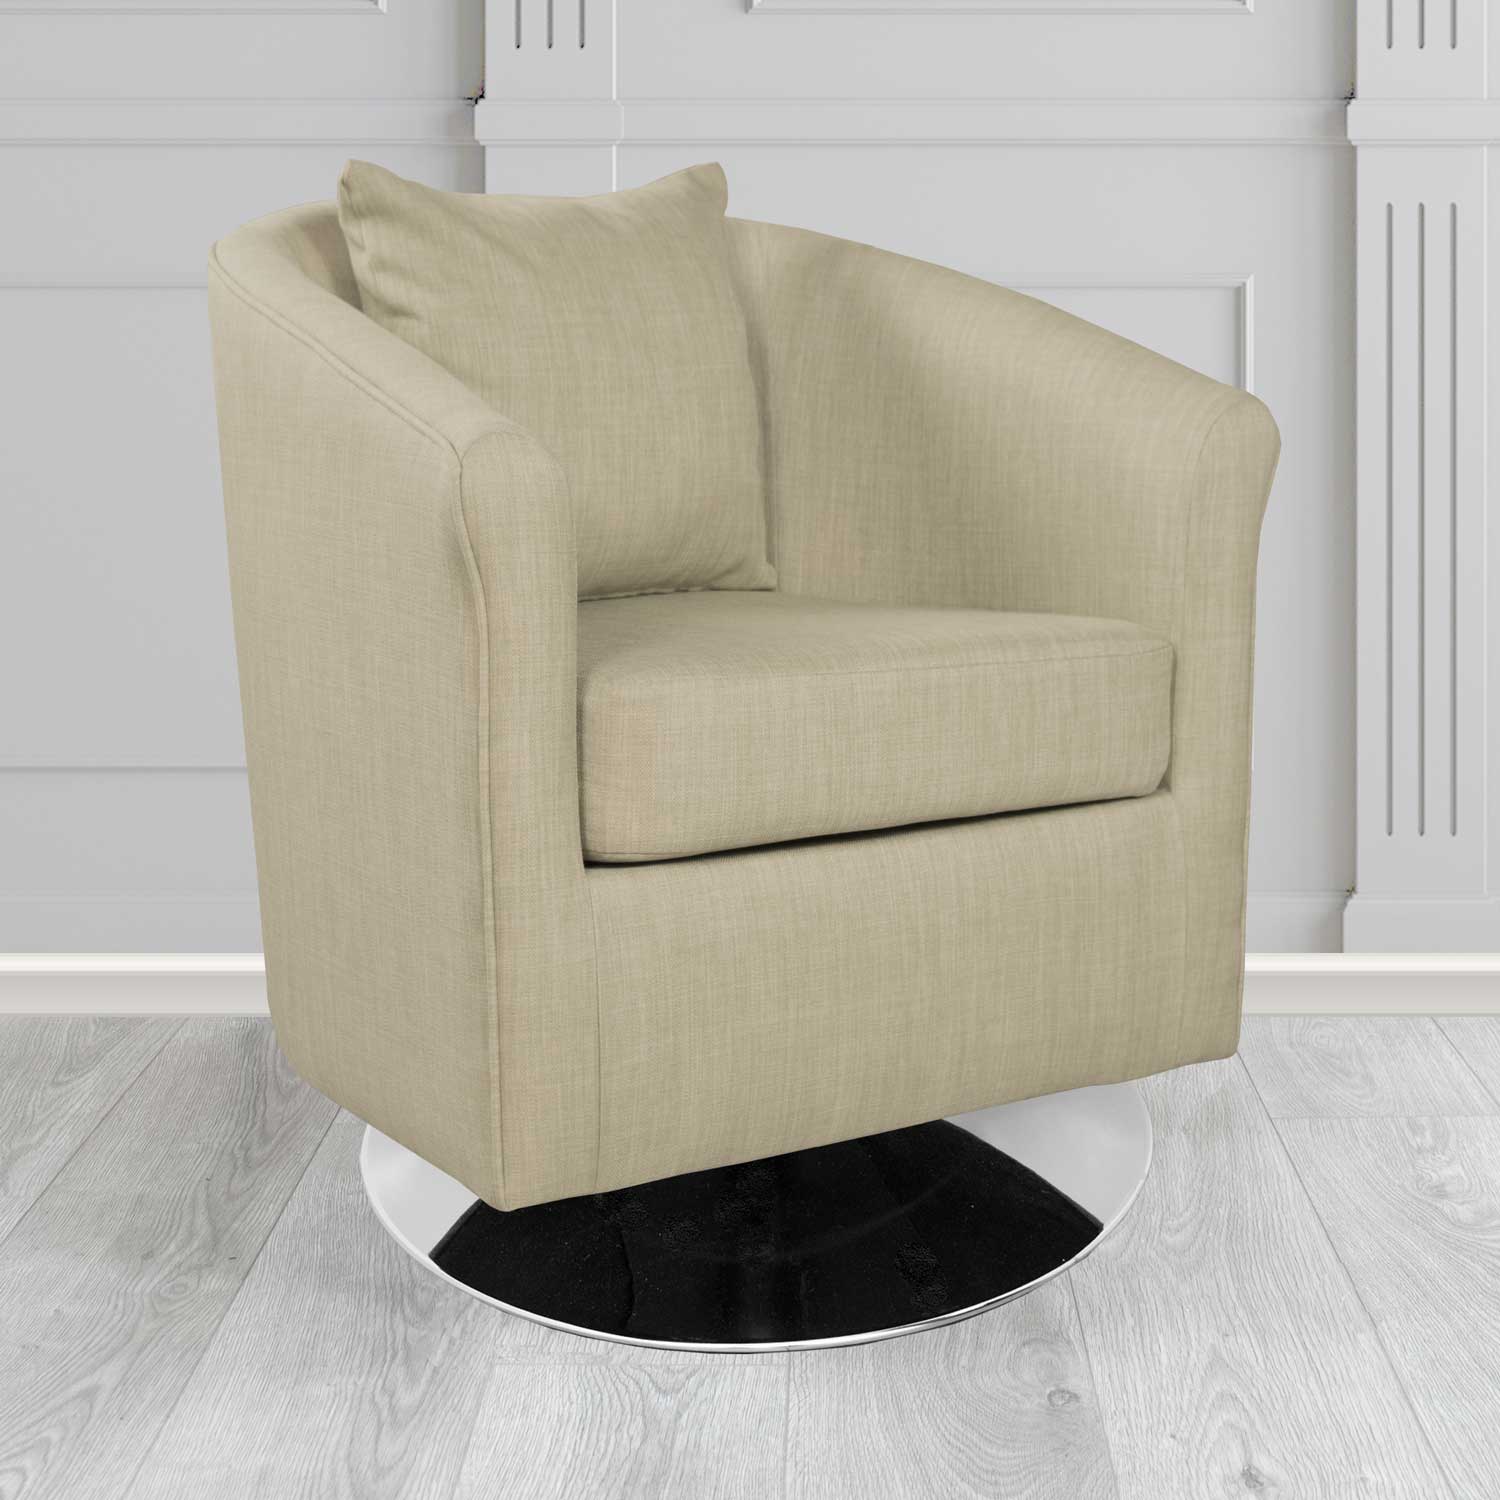 St Tropez Charles Fudge Plain Linen Fabric Swivel Tub Chair - The Tub Chair Shop